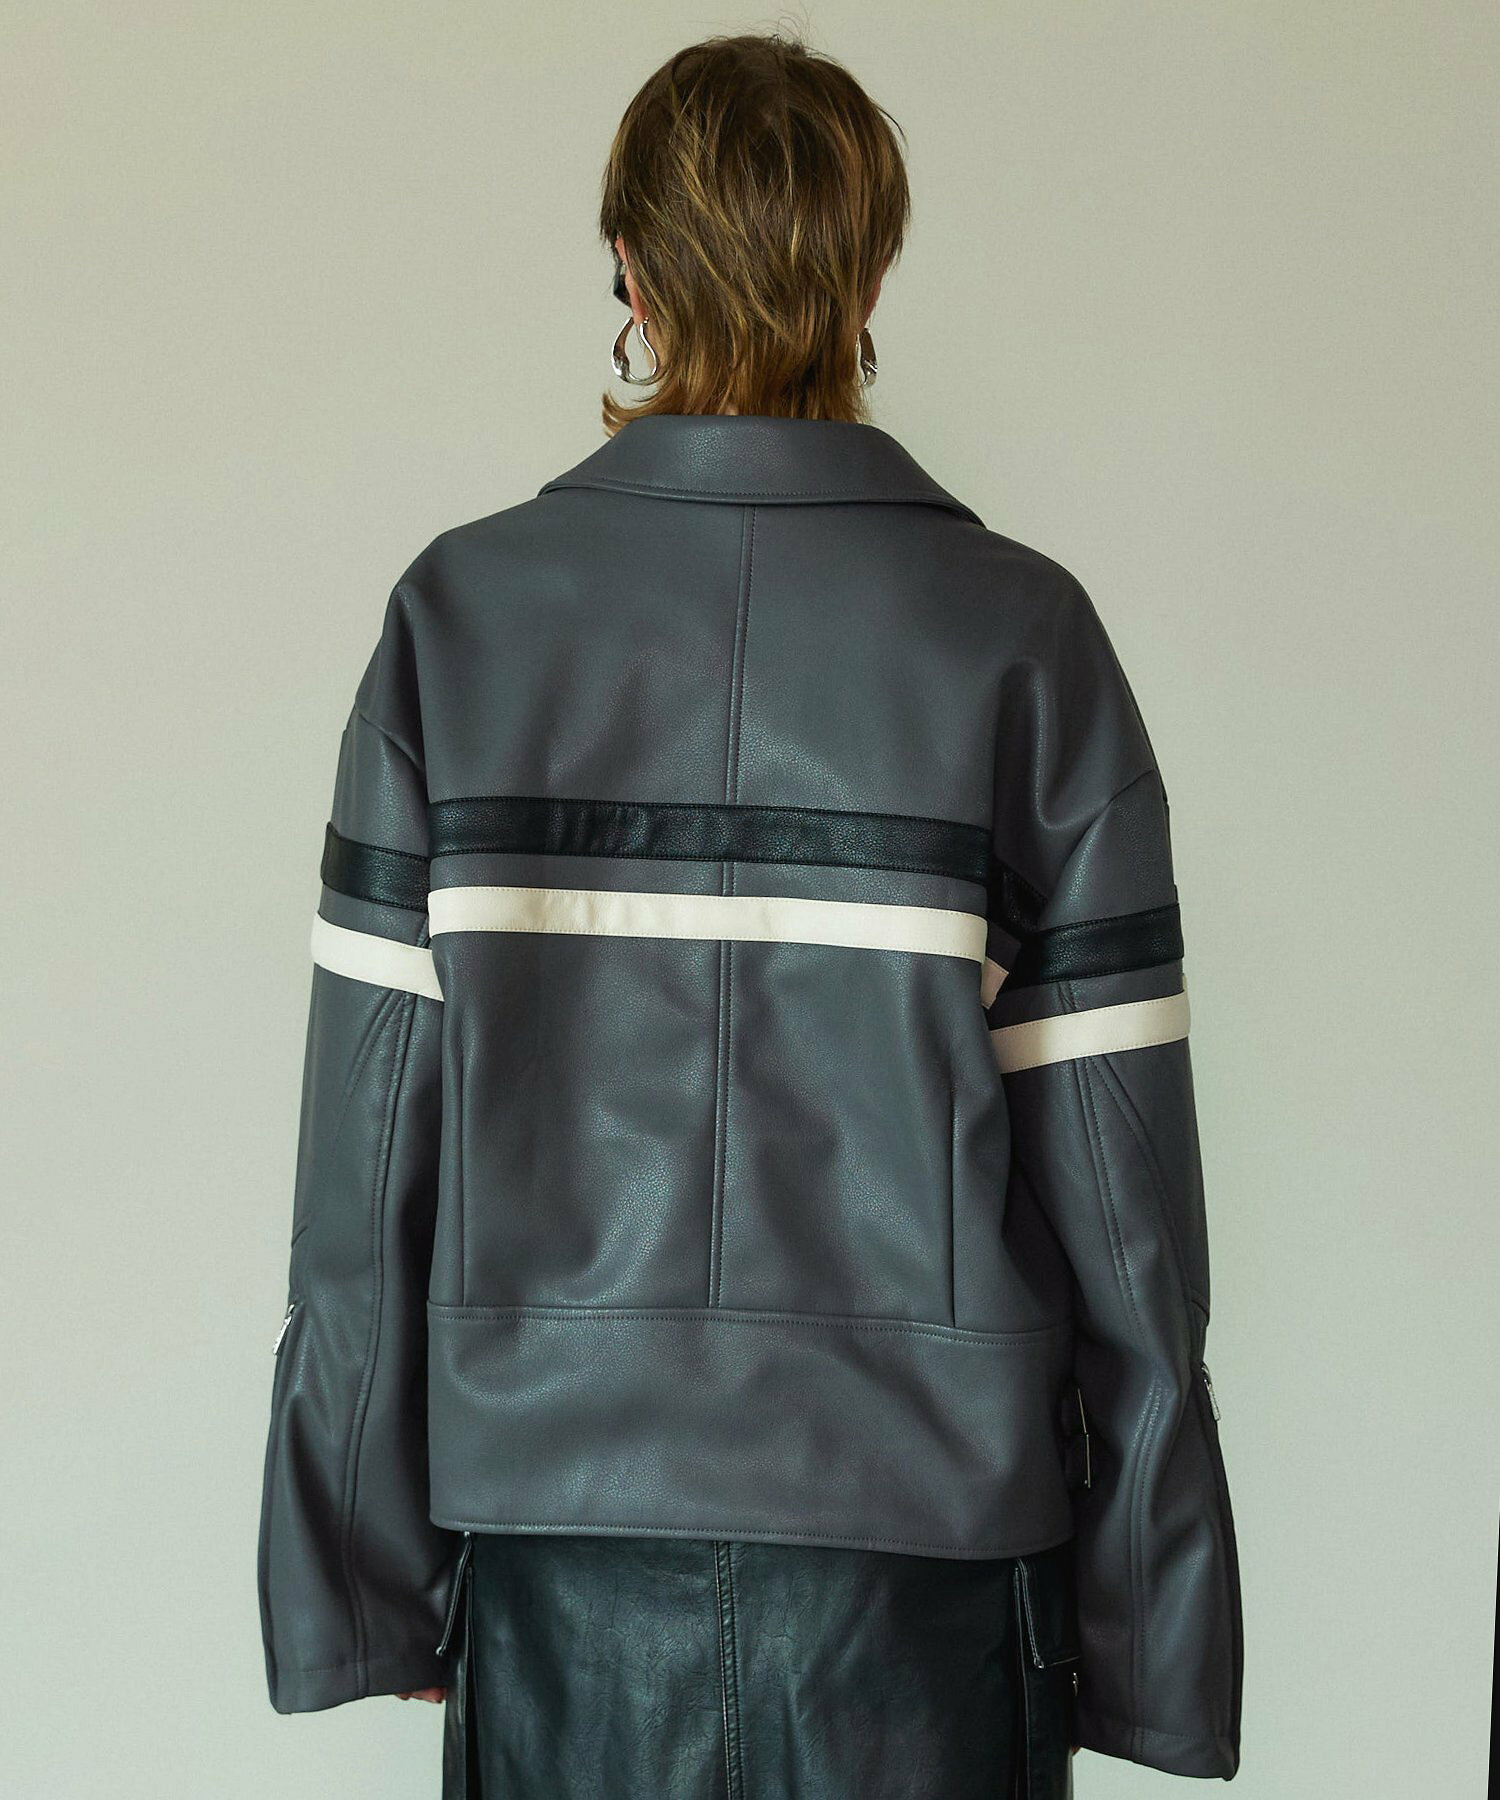 モーターサイクルフェイクレザージャケット / Motorcycle Synthetic Leather Jacket